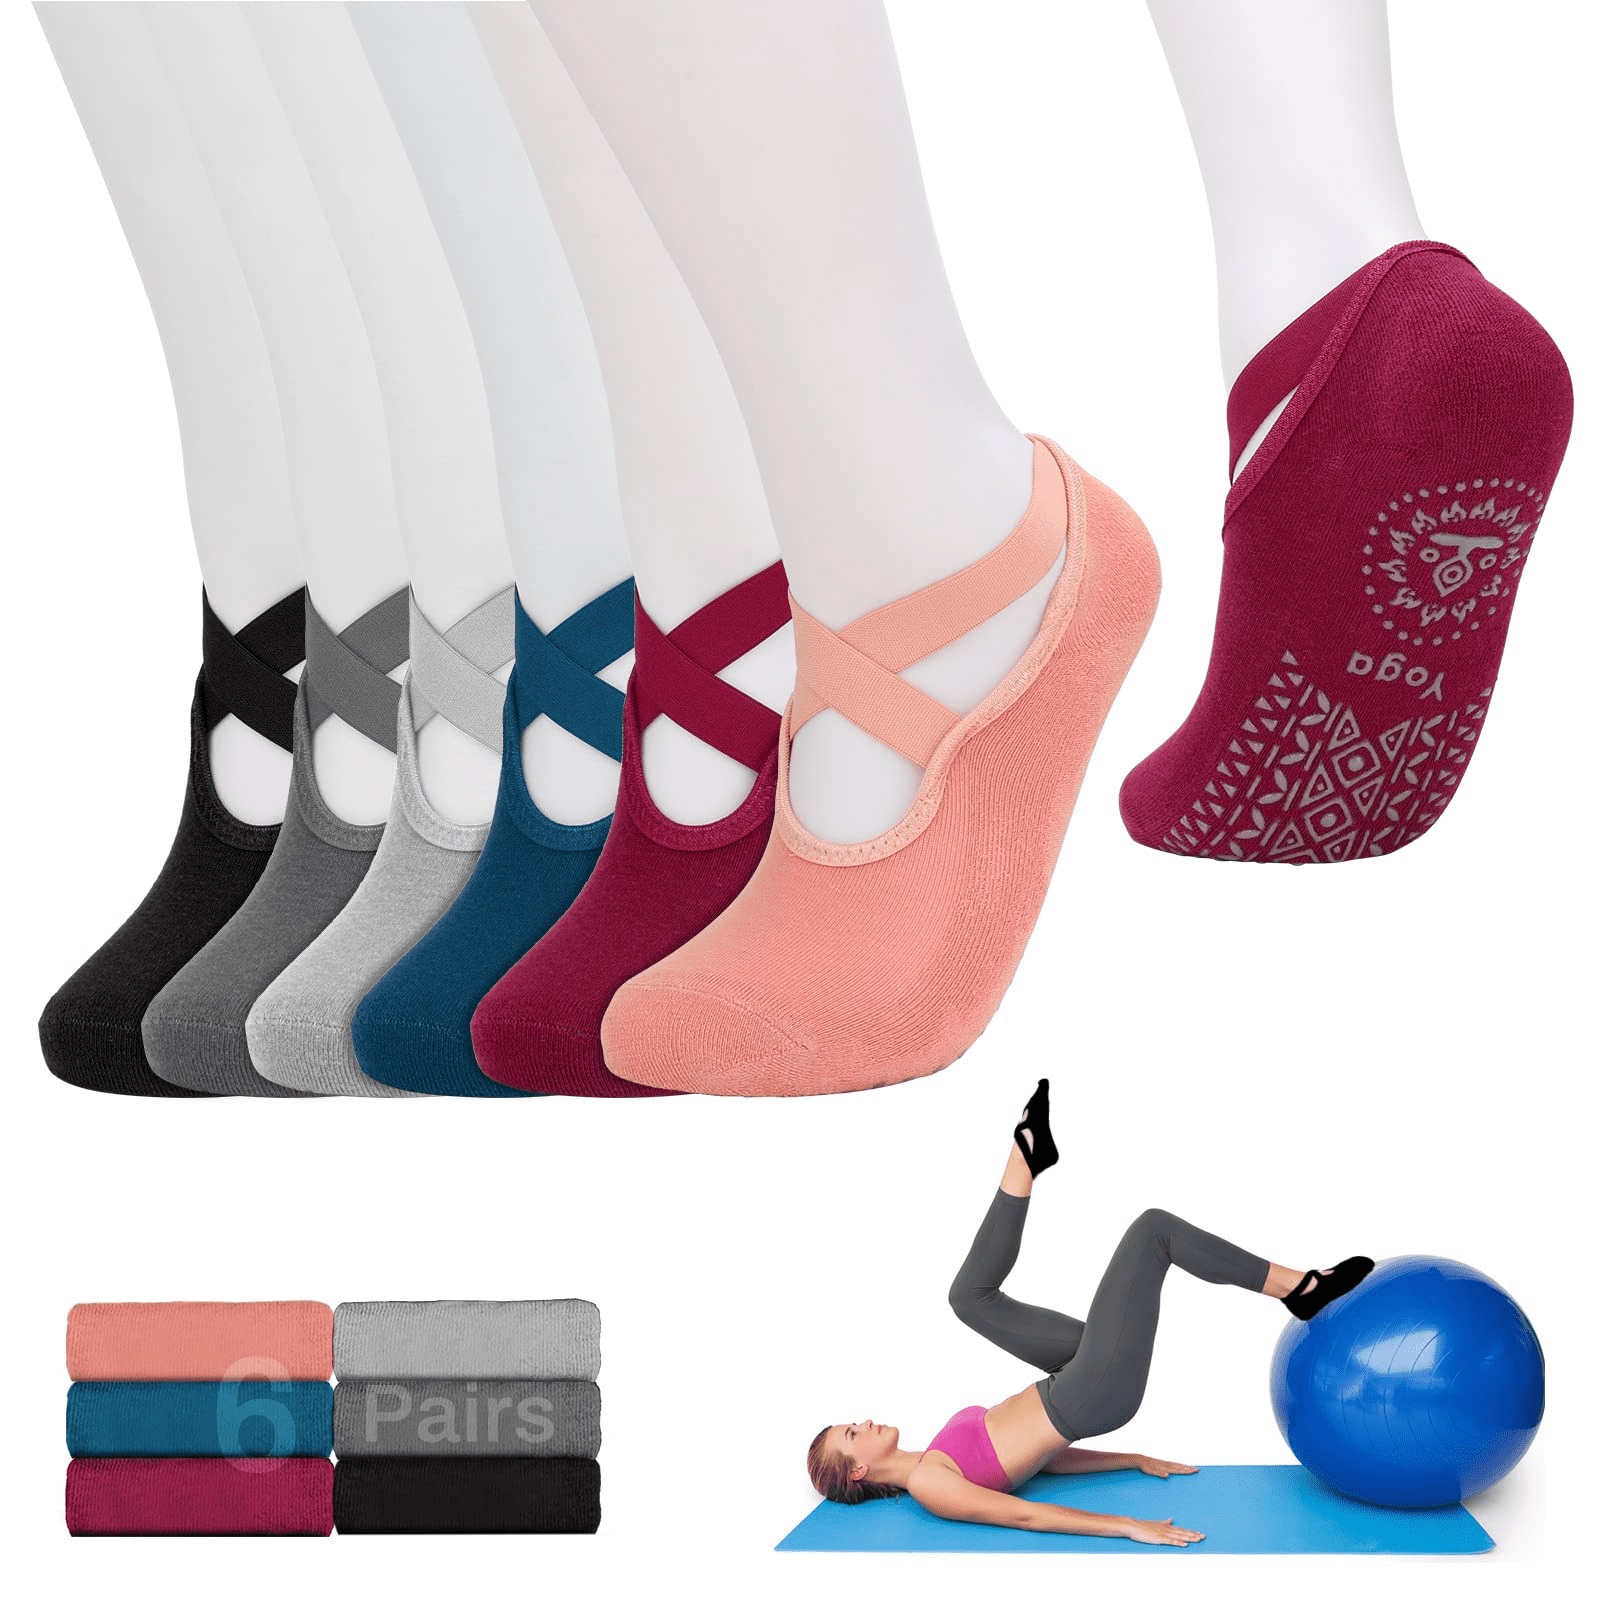 6 Pair Women Non-Slip Yoga Socks with Grip for Pilates Ballet Dance Gym Exercise 